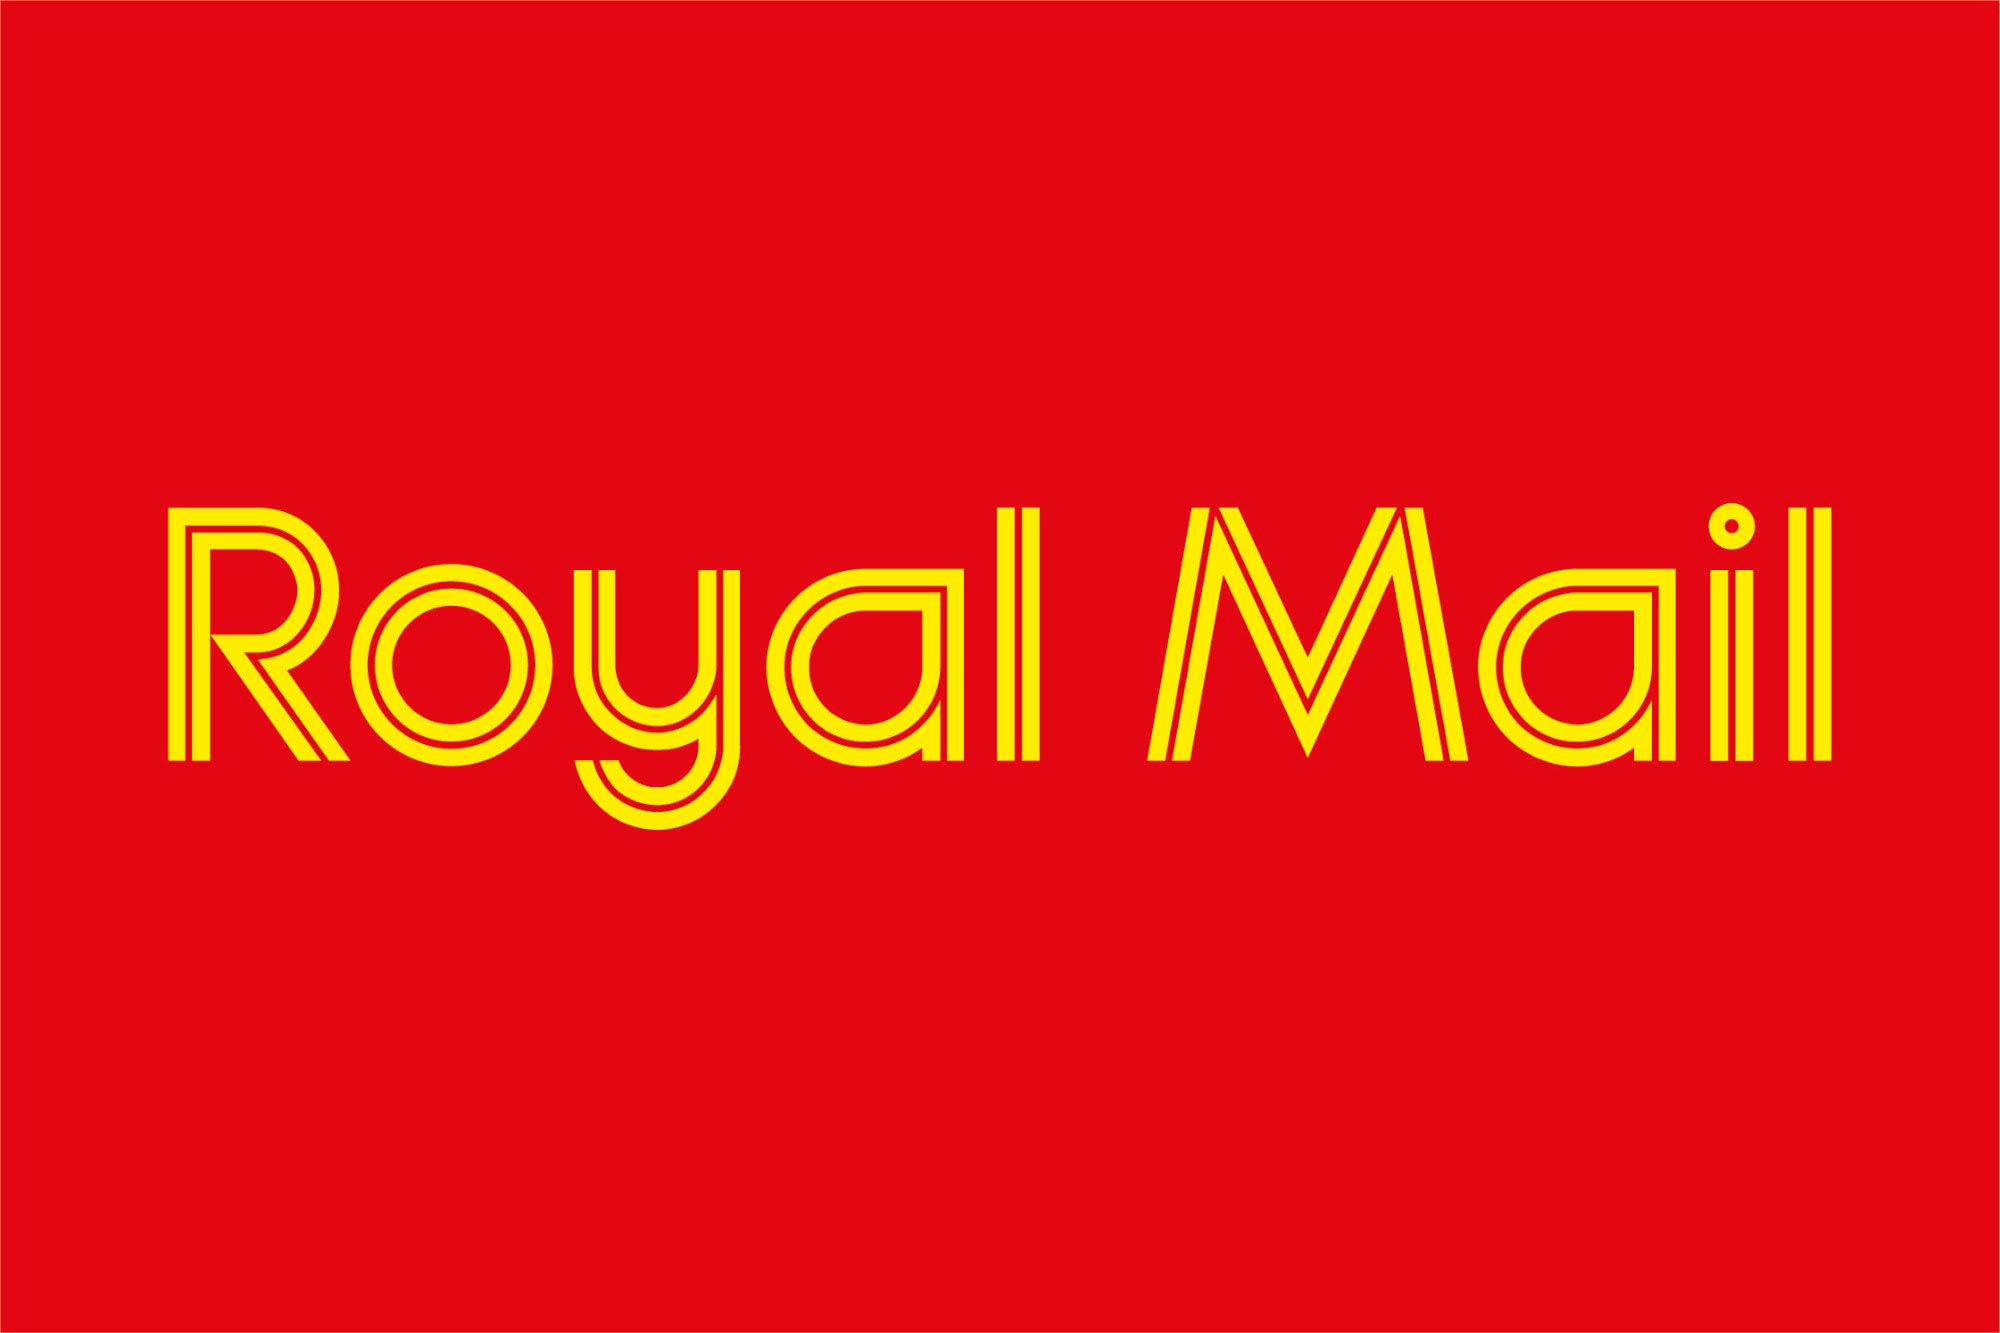 Royal-Mail-logo.jpg